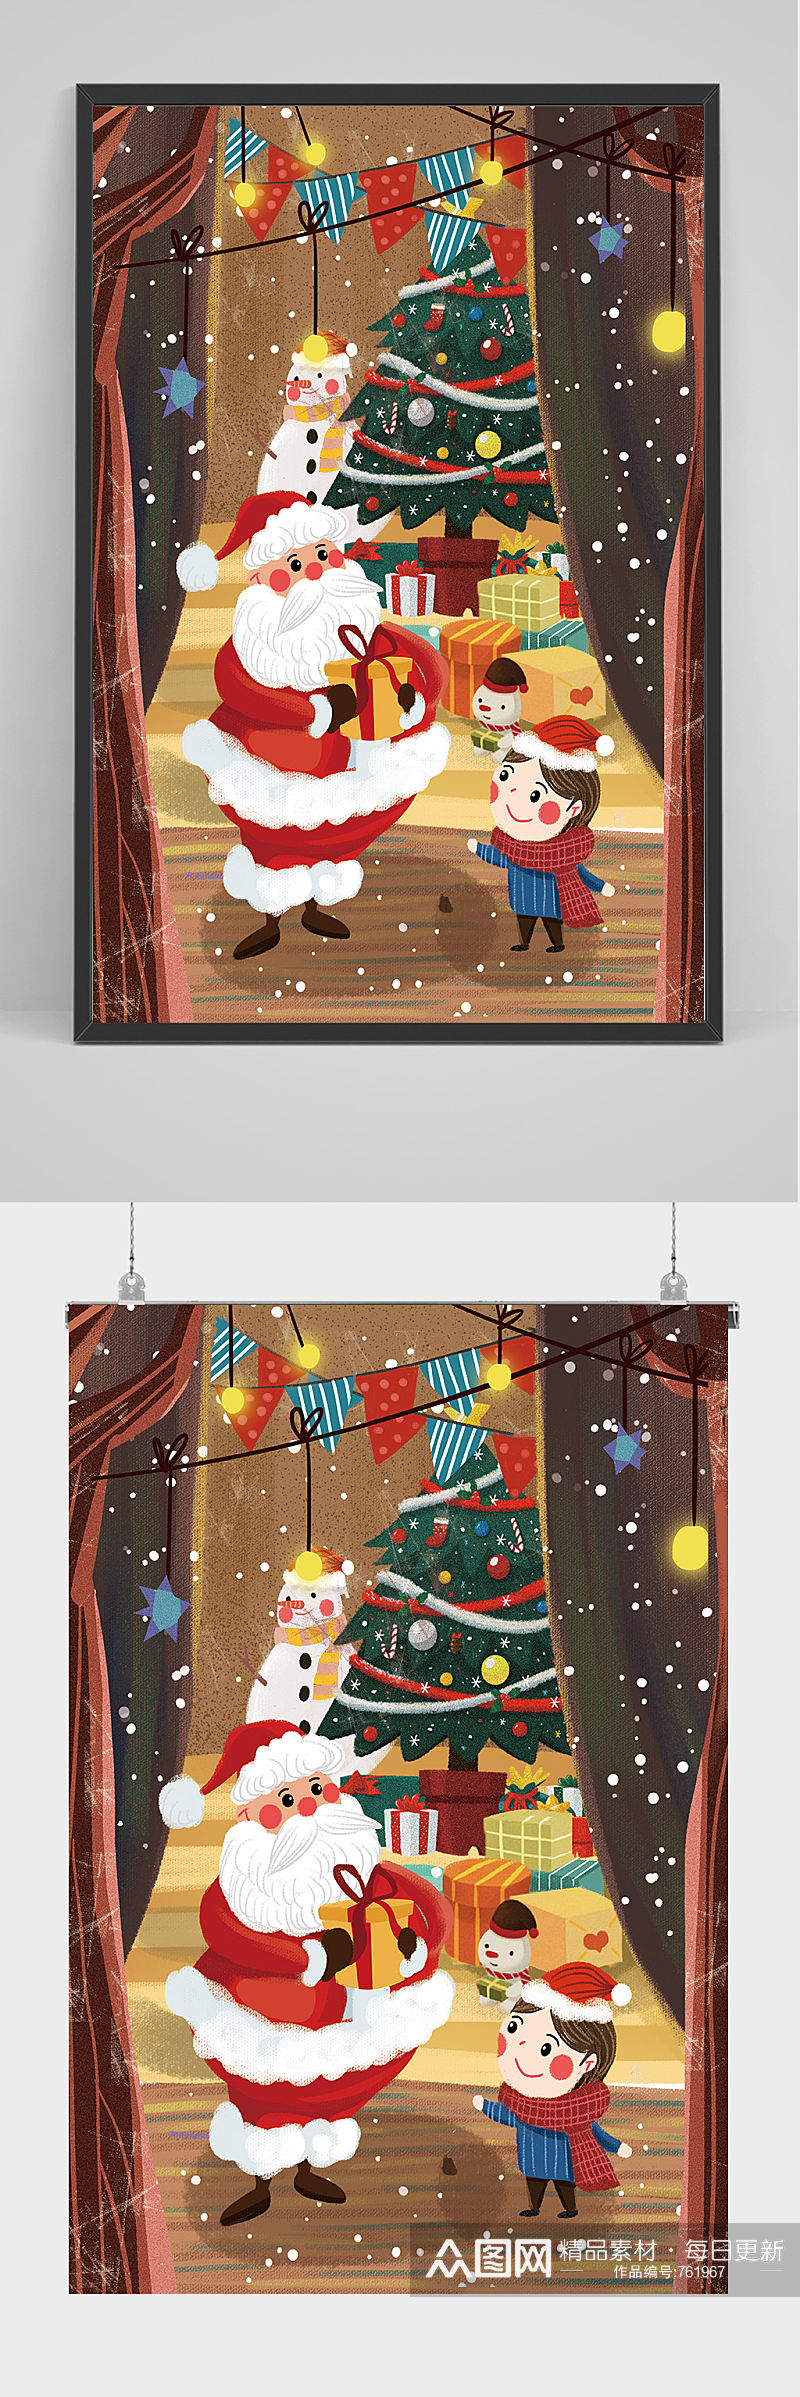 圣诞老人和孩子手绘插画设计素材